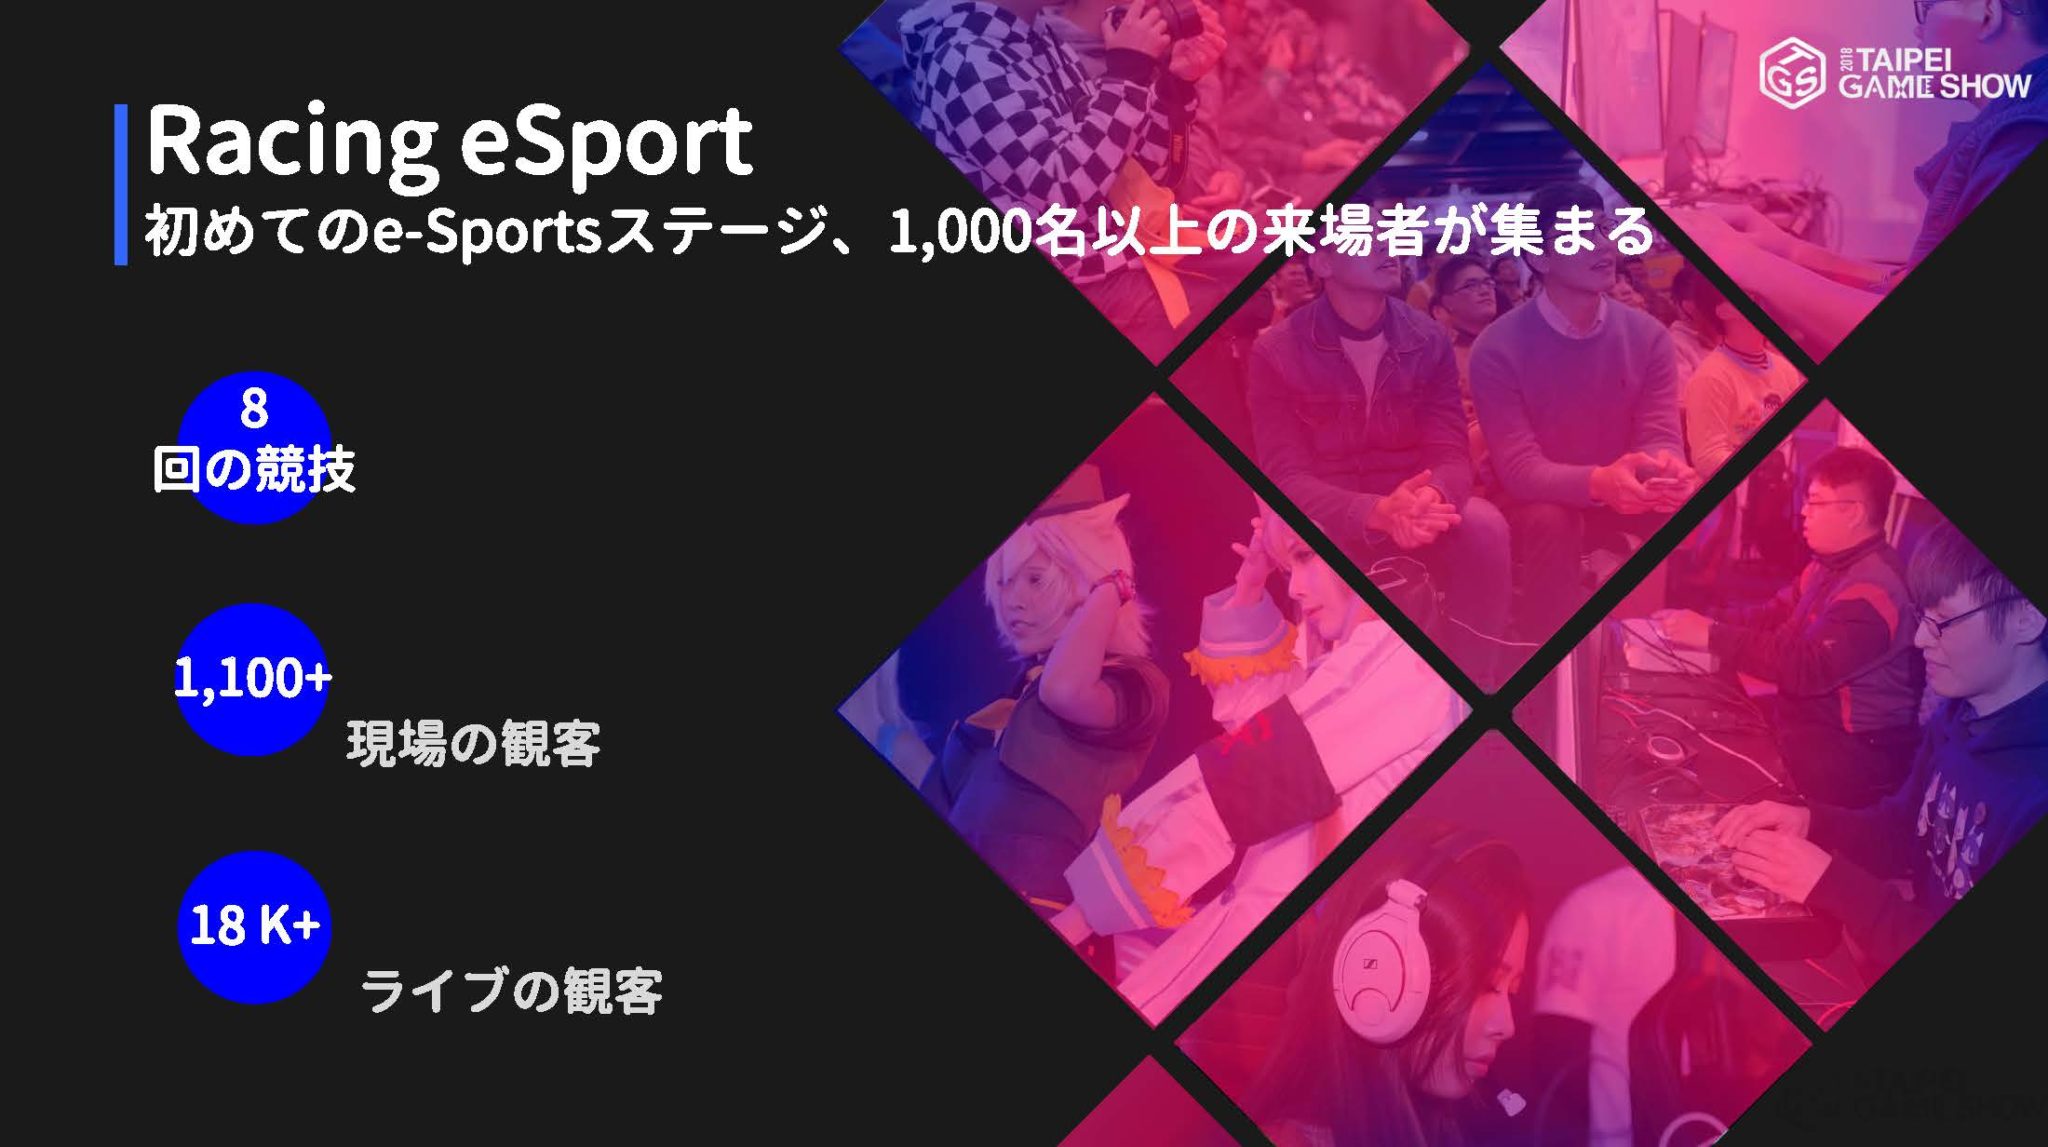 台北ゲームショウ2018の公式データレポートが公開